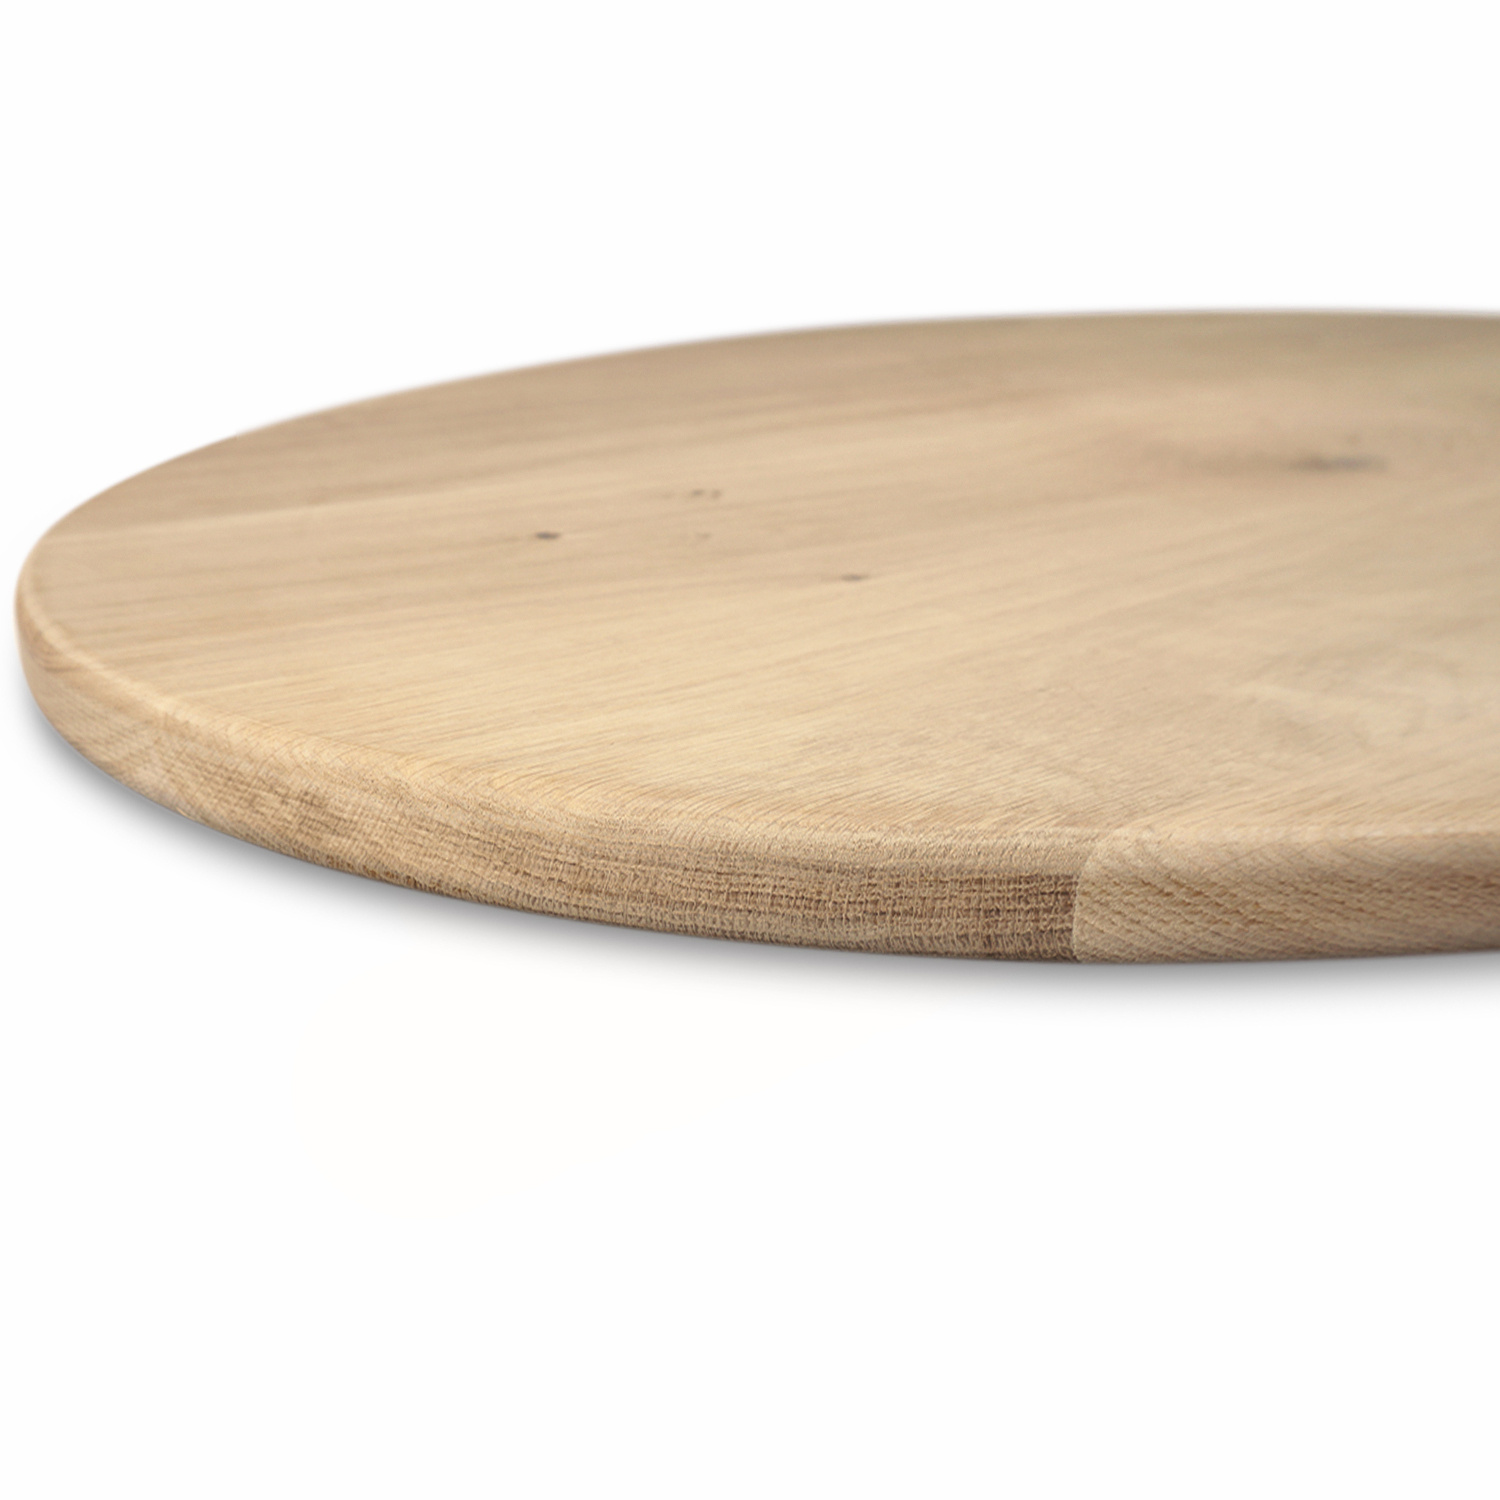  Ovaal eiken tafelblad - 2,5 cm dik (1-laag) - Diverse afmetingen - extra rustiek Europees eikenhout - met extra brede lamellen (circa 14-20 cm) - verlijmd kd 8-12%